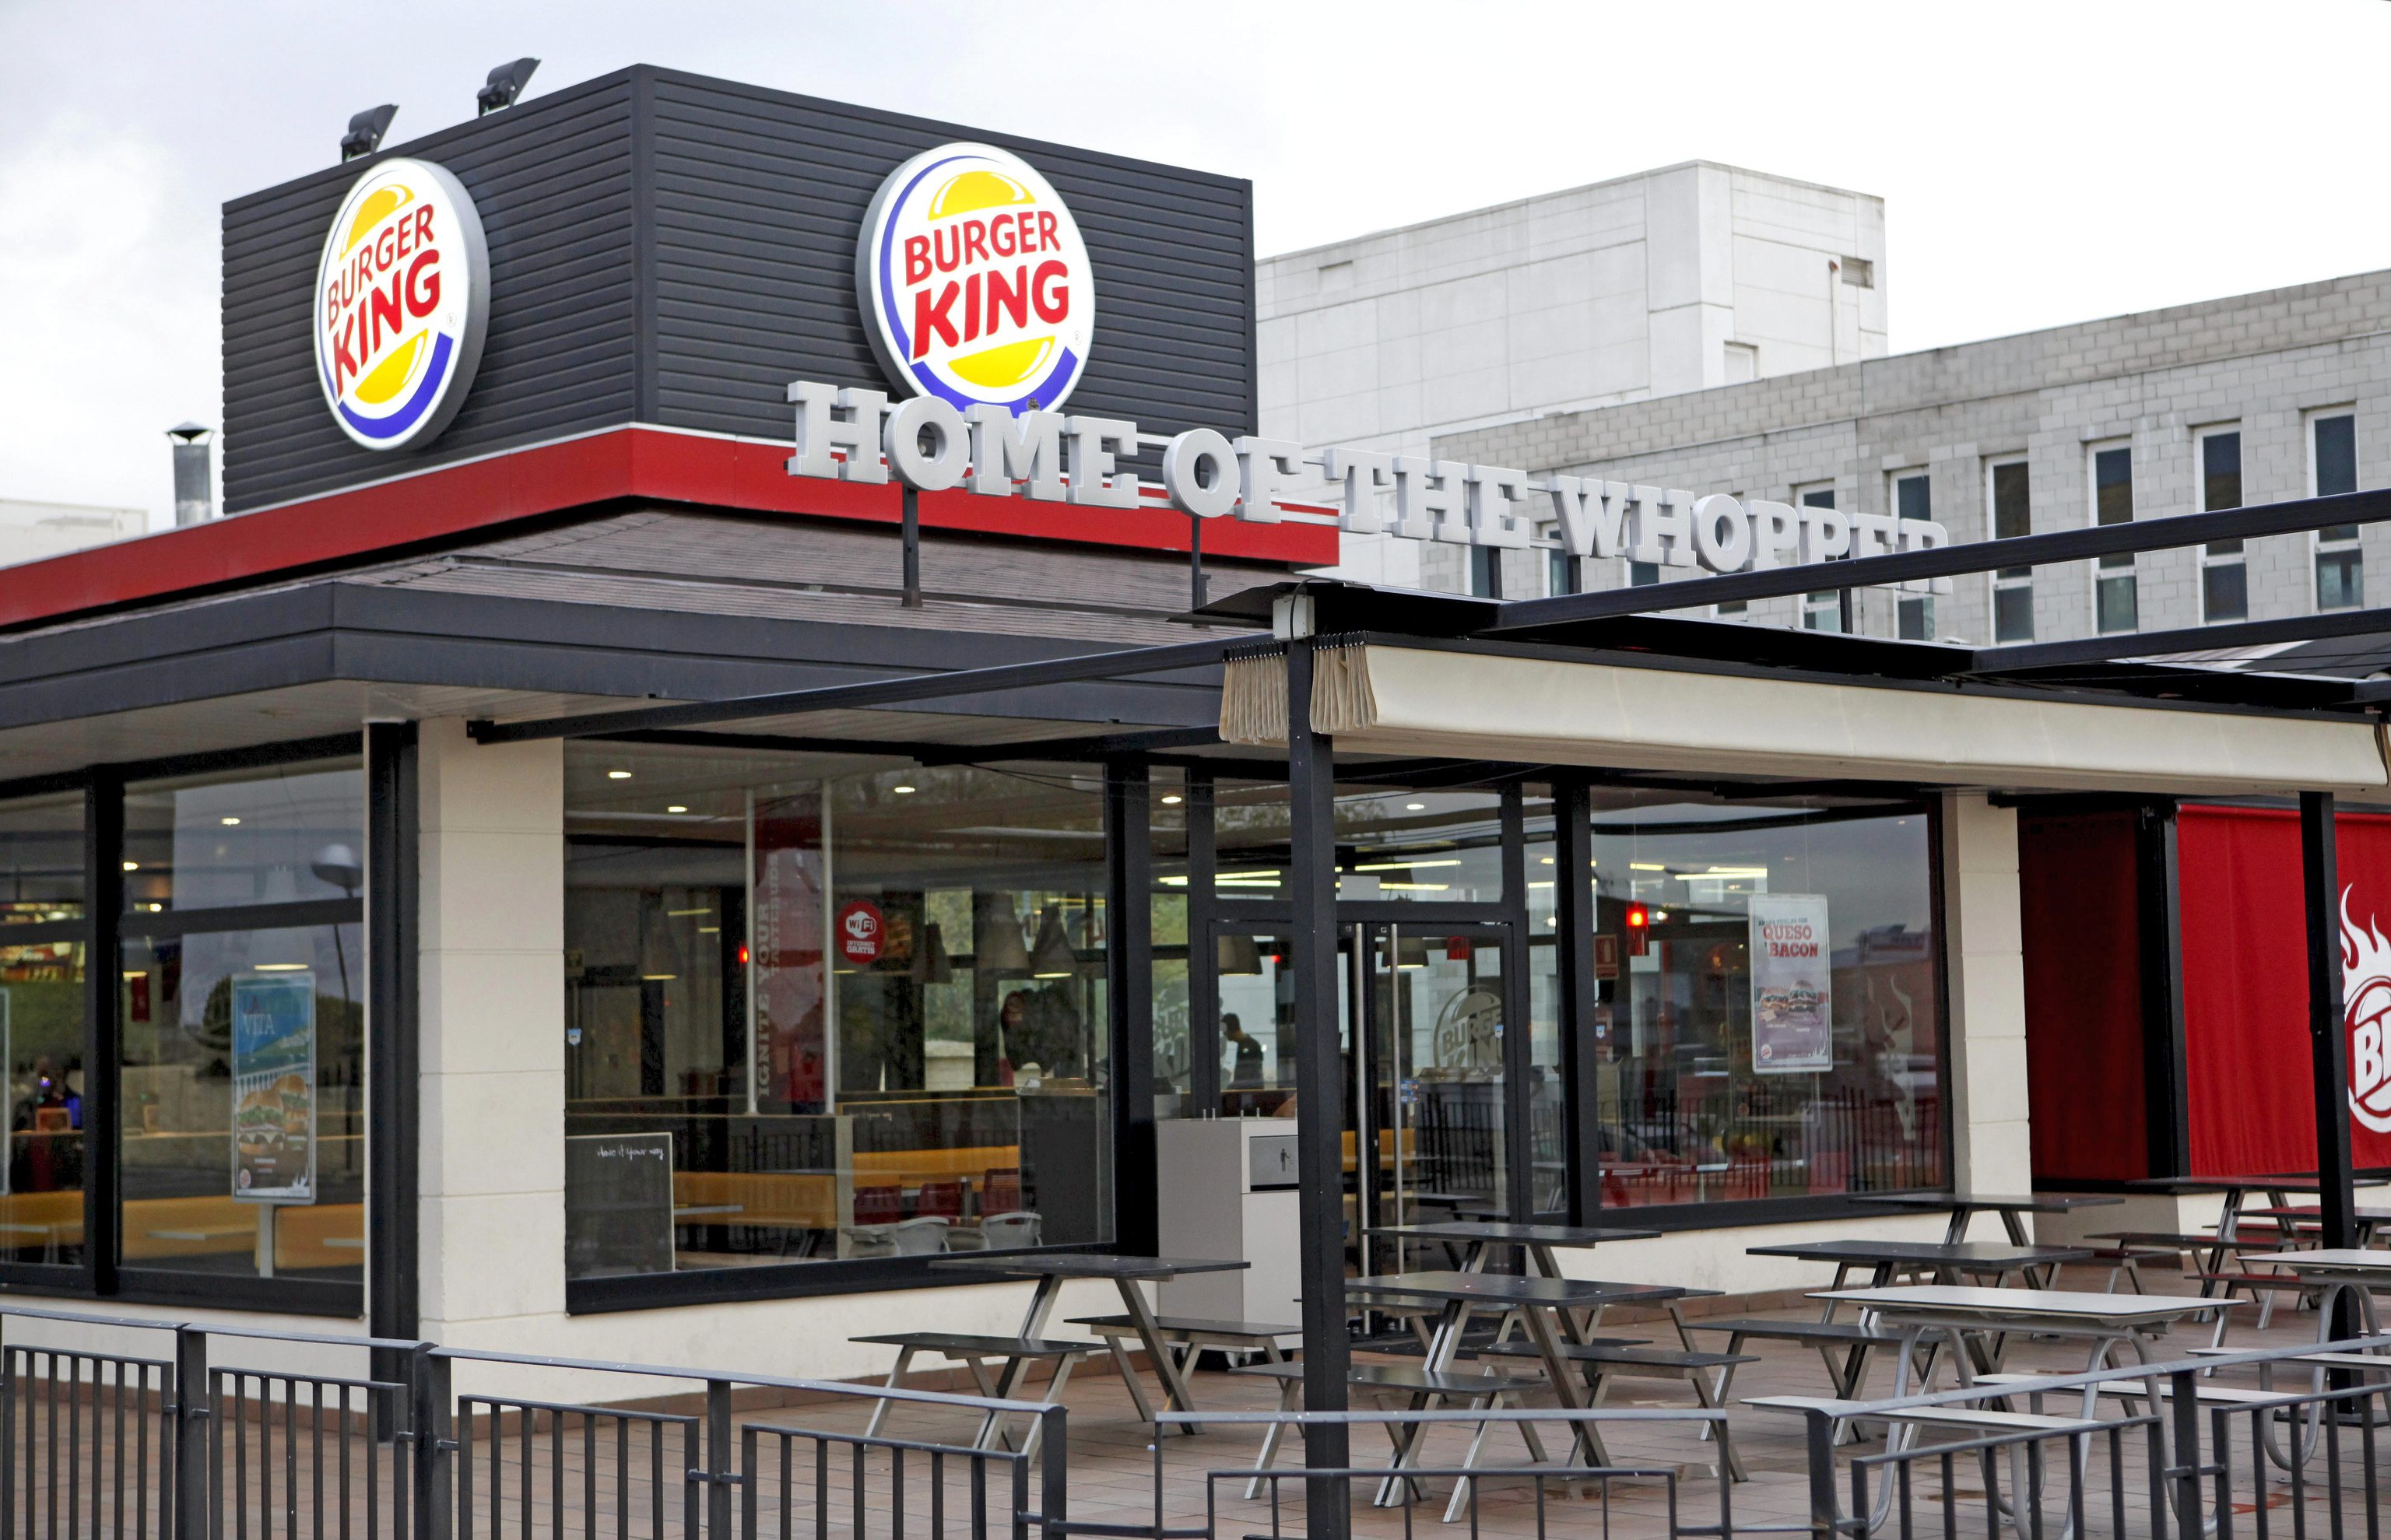 Establecimiento de Burger King.